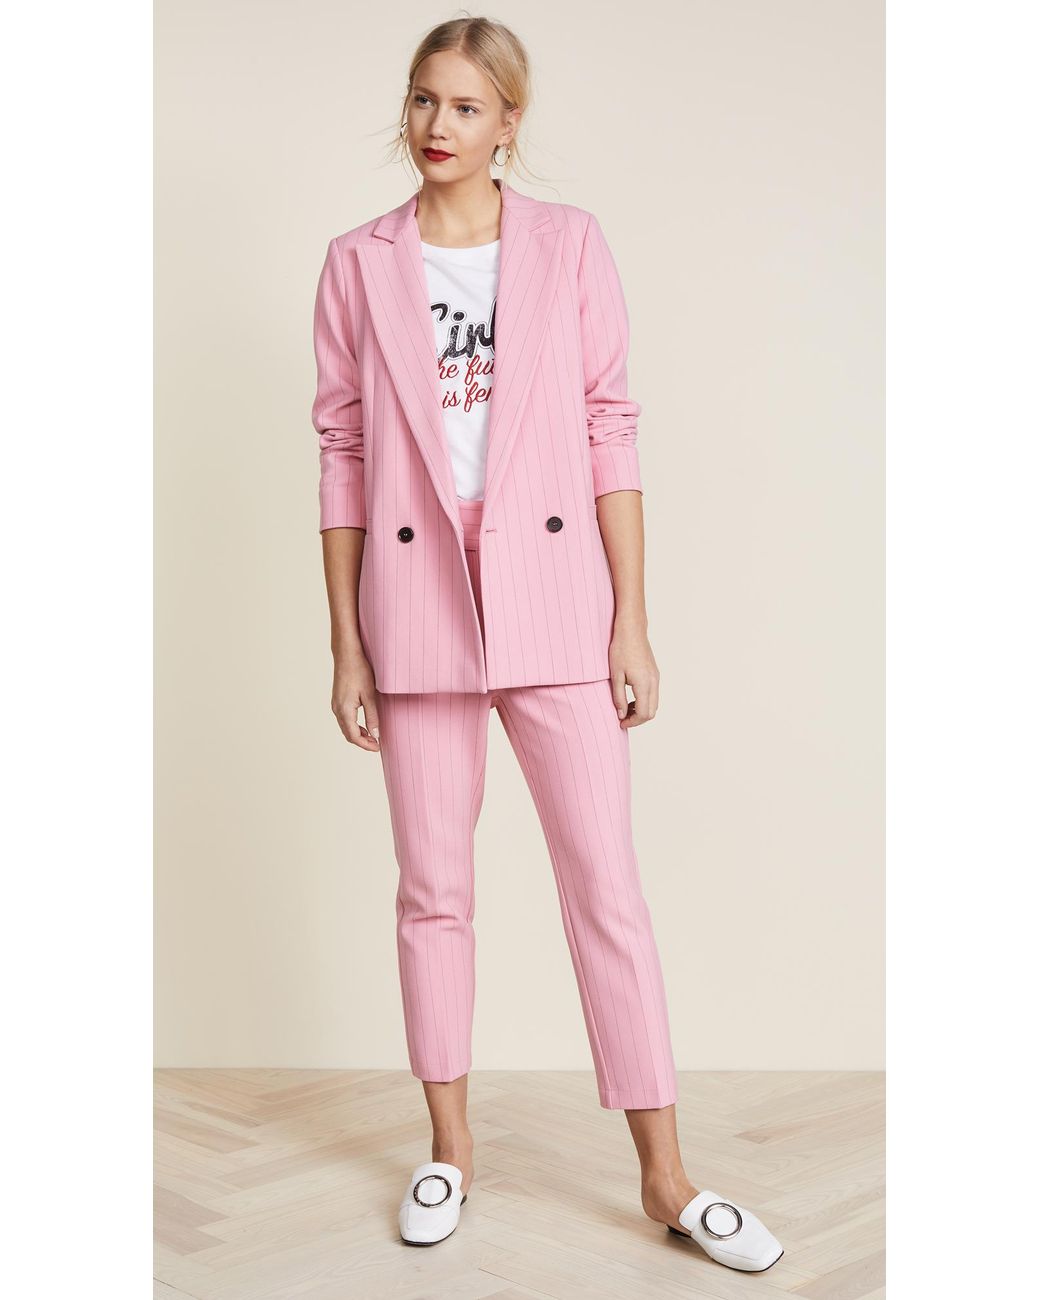 Ganni Synthetic Brighton Blazer in Pink | Lyst Canada